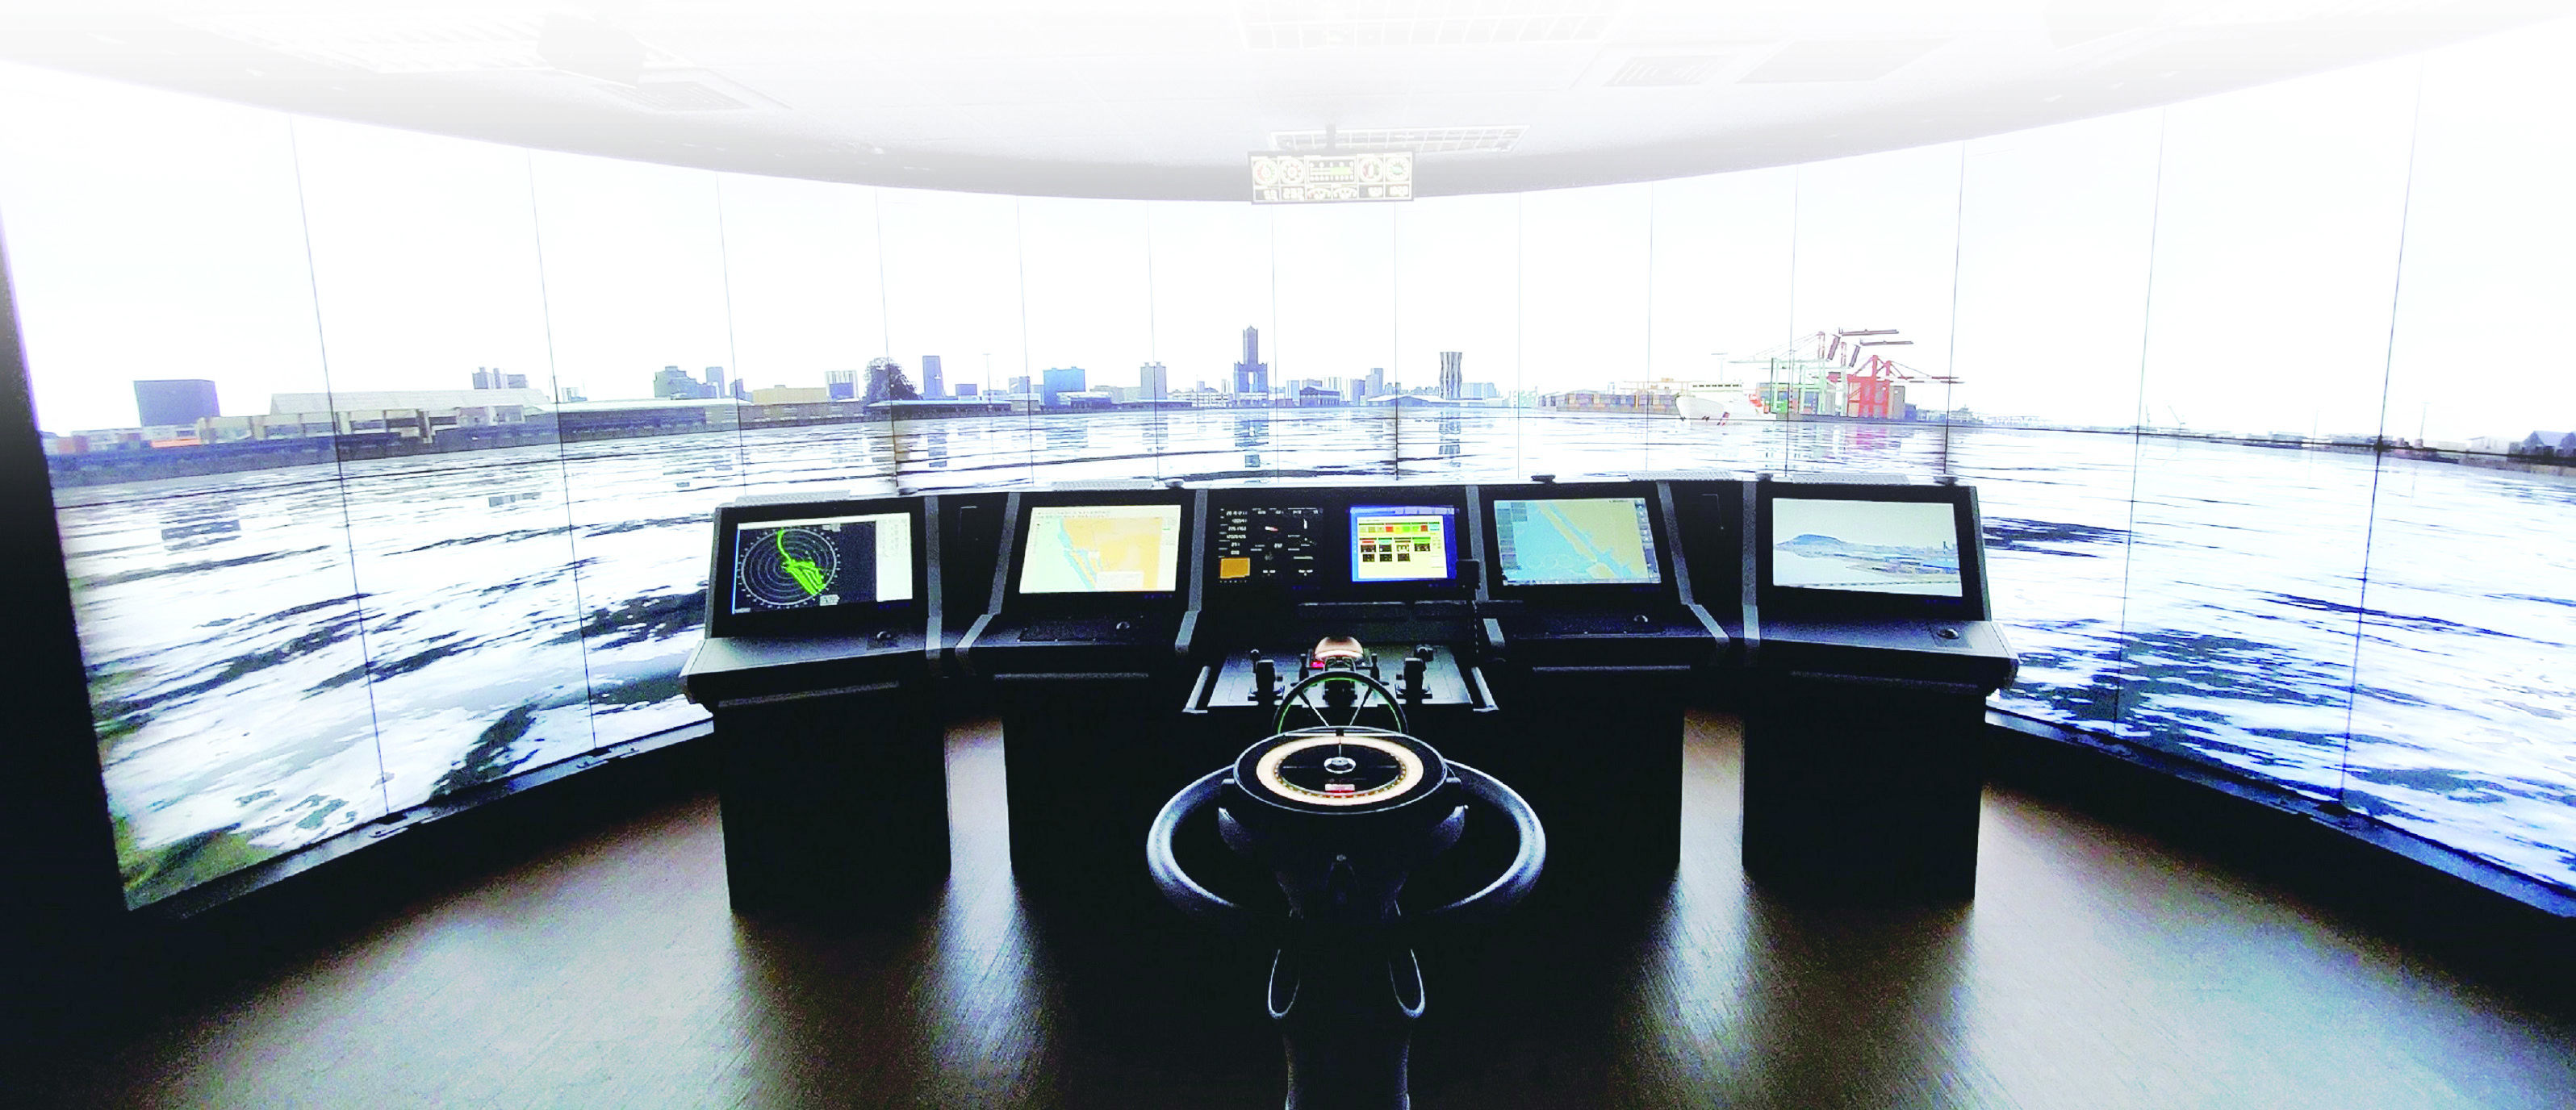 自駕船模擬操控室駕駛台及虛擬實境場景